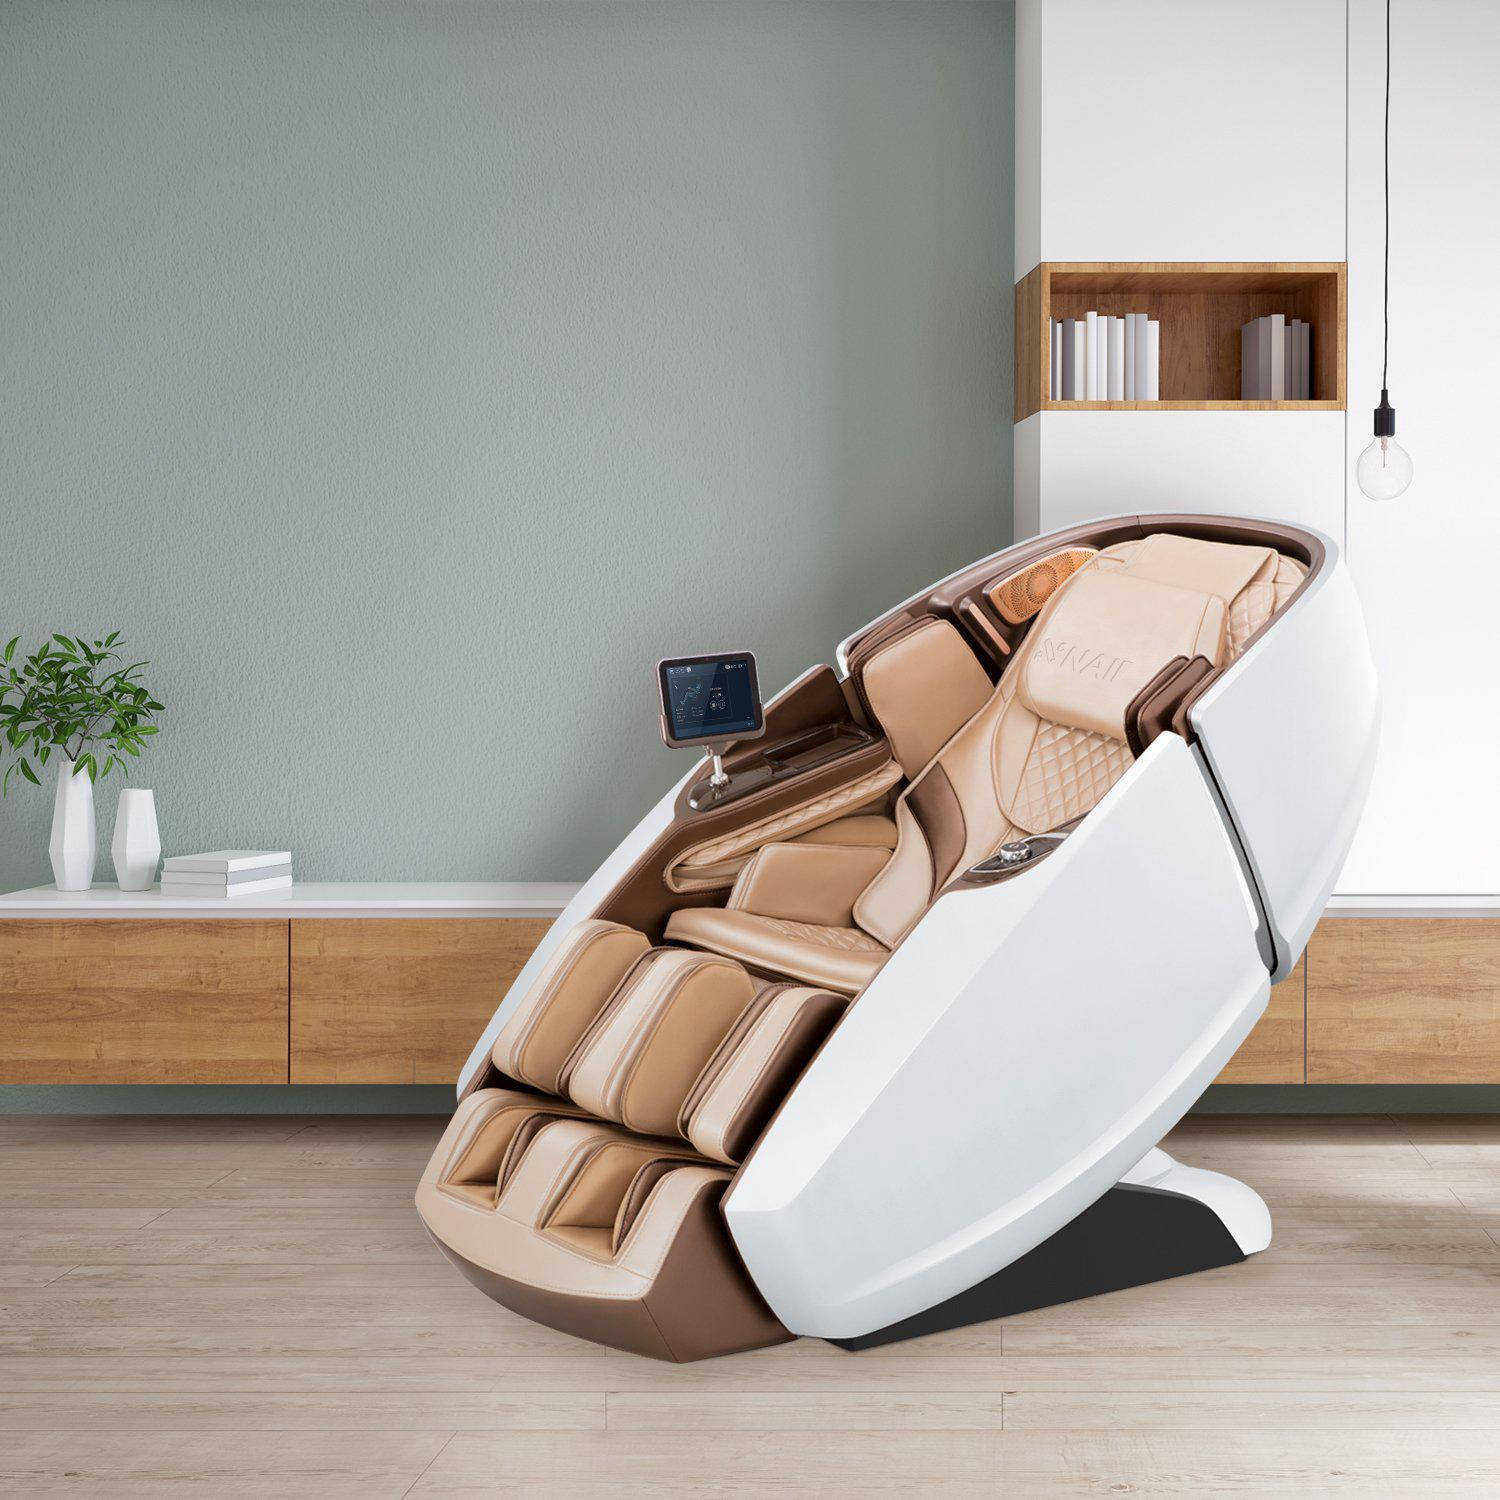 Naipo Seat Cushion with Heating and Cooling - NAIPO